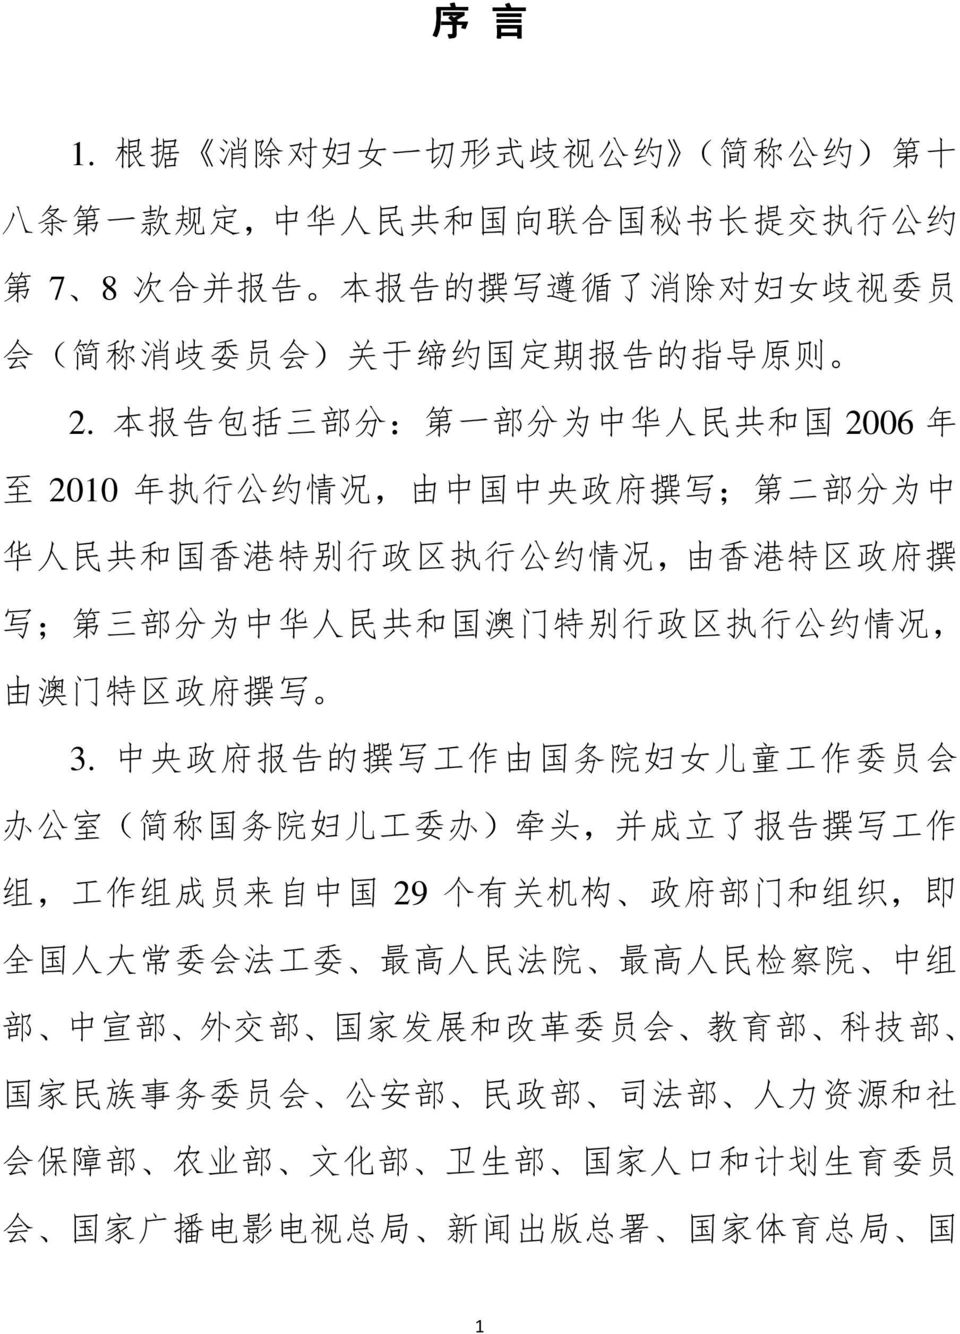 则 2. 本 报 告 包 括 三 部 分 : 第 一 部 分 为 中 华 人 民 共 和 国 2006 年 至 2010 年 执 行 公 约 情 况, 由 中 国 中 央 政 府 撰 写 ; 第 二 部 分 为 中 华 人 民 共 和 国 香 港 特 别 行 政 区 执 行 公 约 情 况, 由 香 港 特 区 政 府 撰 写 ; 第 三 部 分 为 中 华 人 民 共 和 国 澳 门 特 别